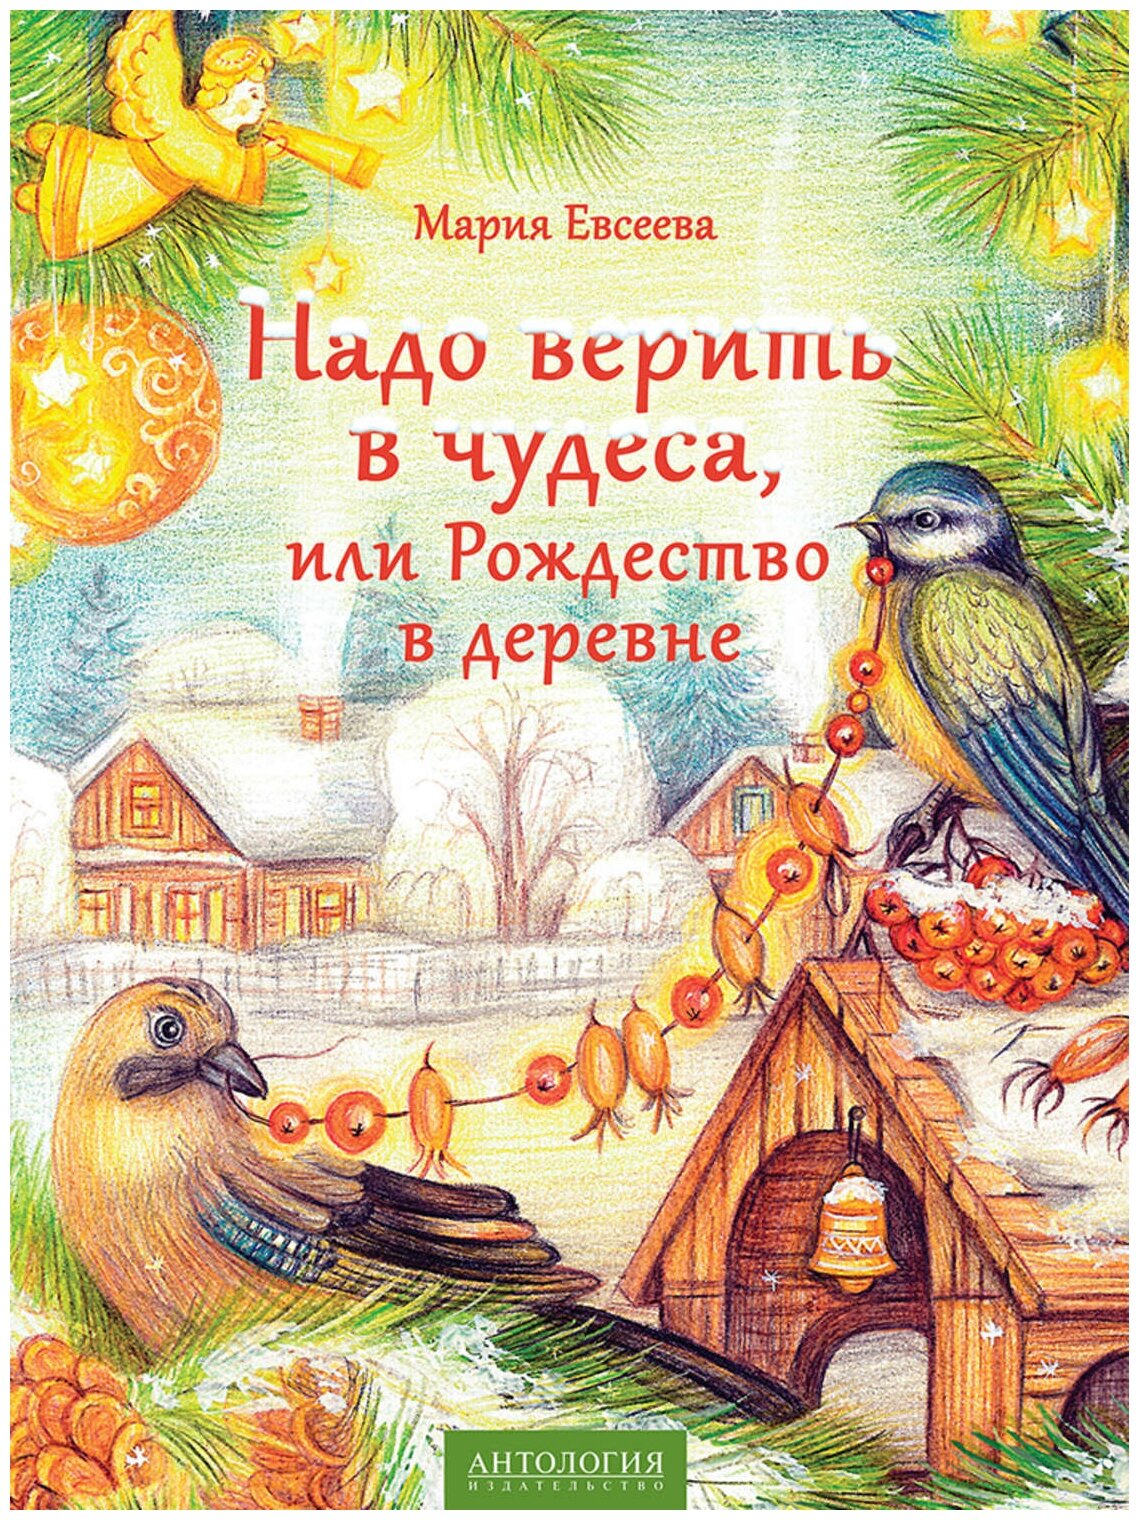 Евсеева М. В. "Надо верить в чудеса, или Рождество в деревне."